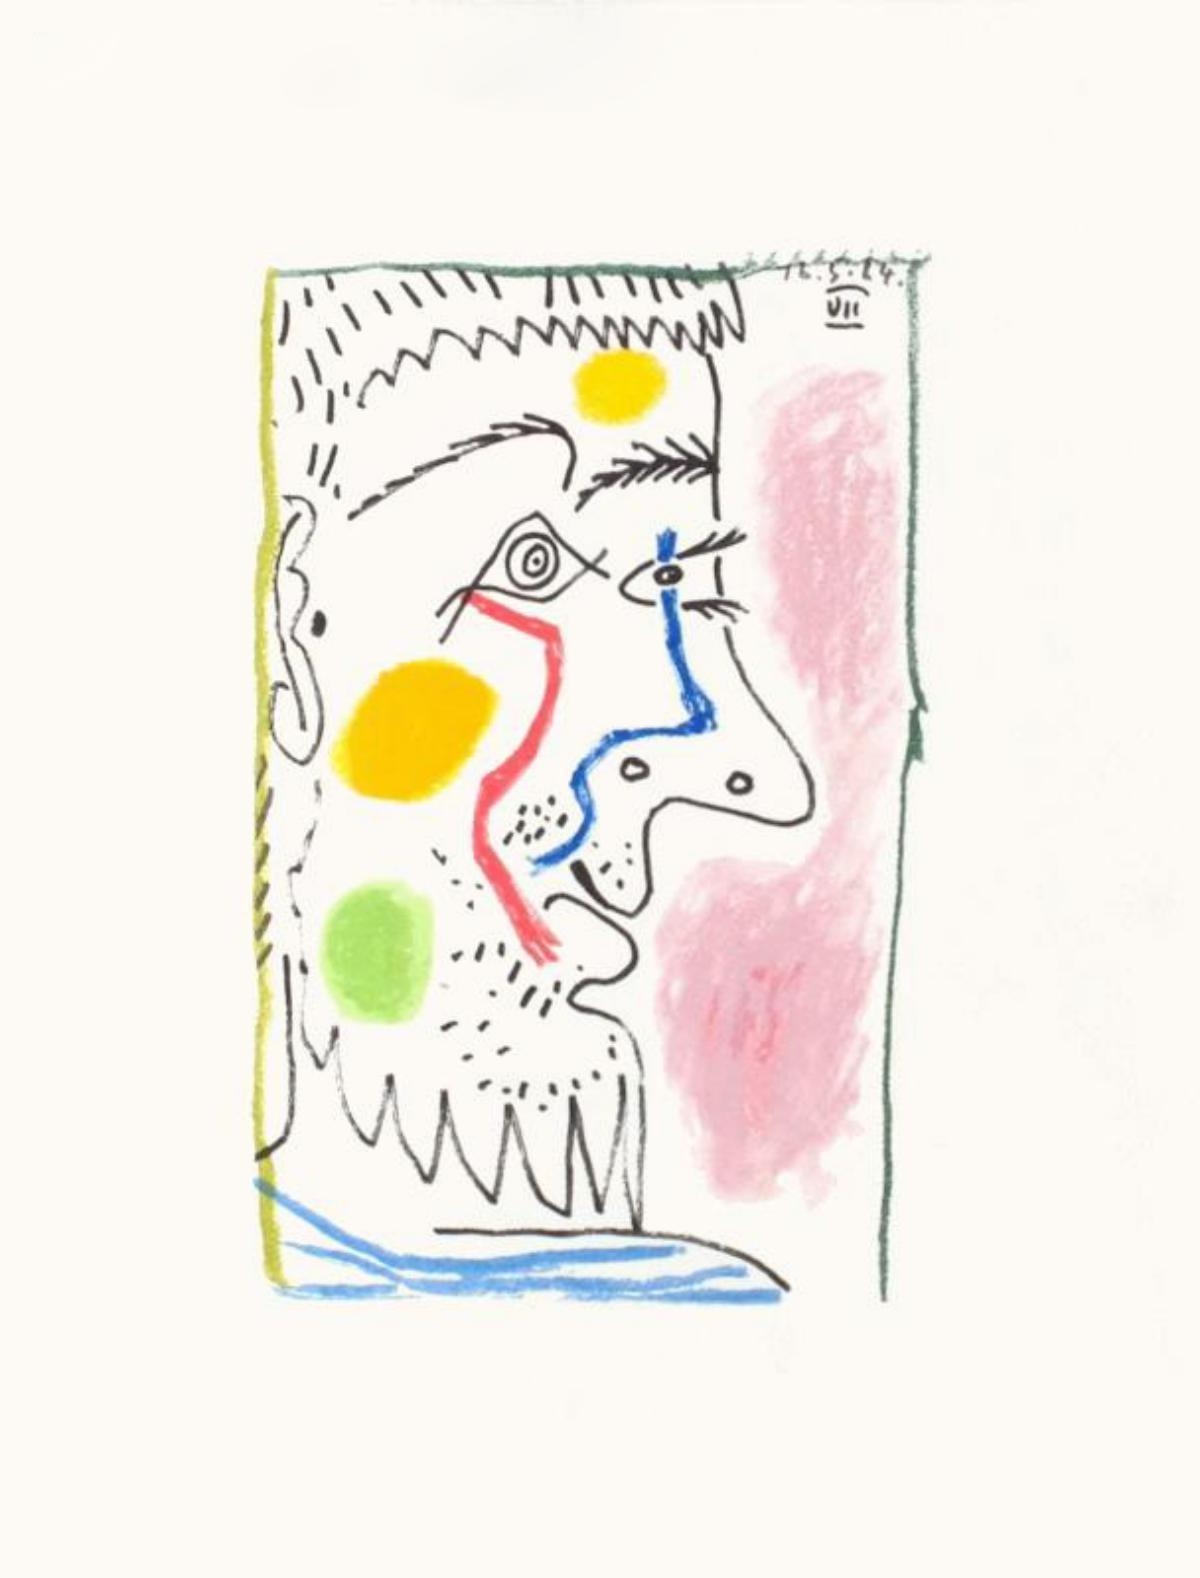 Le Gout du Bonheur 14 - Pablo Picasso